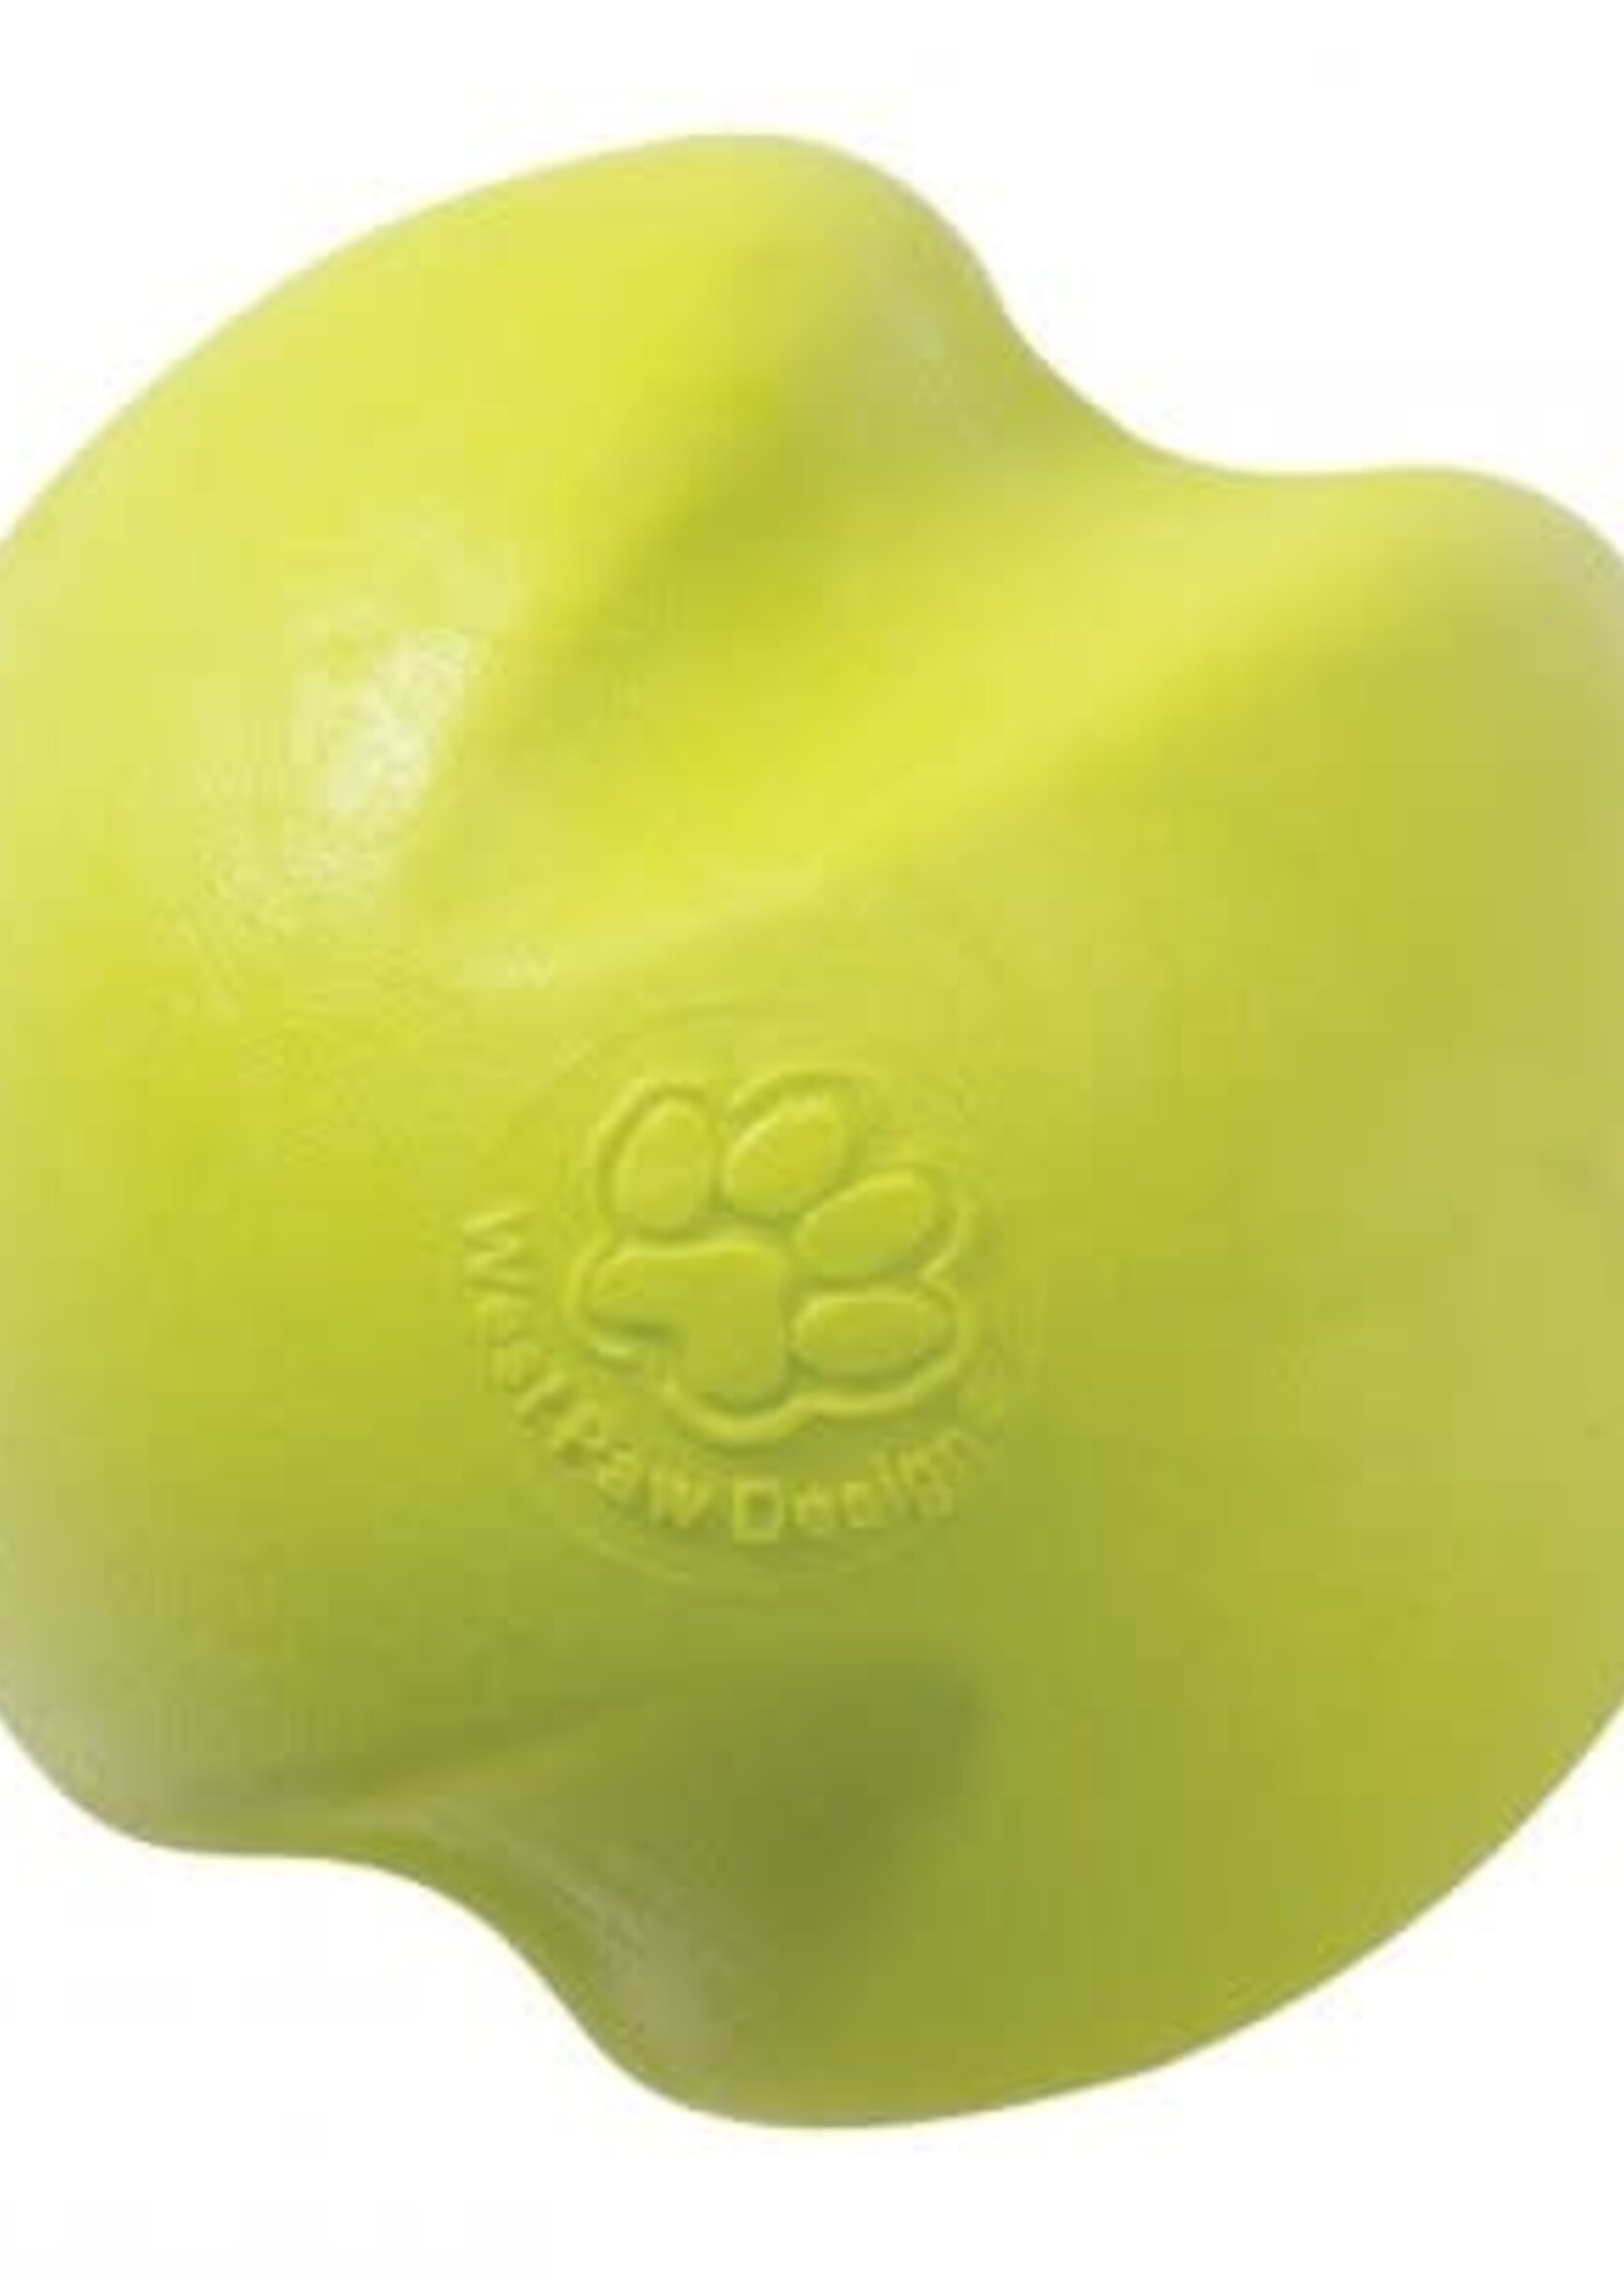 West Paw West Paw Jive Ball Dog Toy